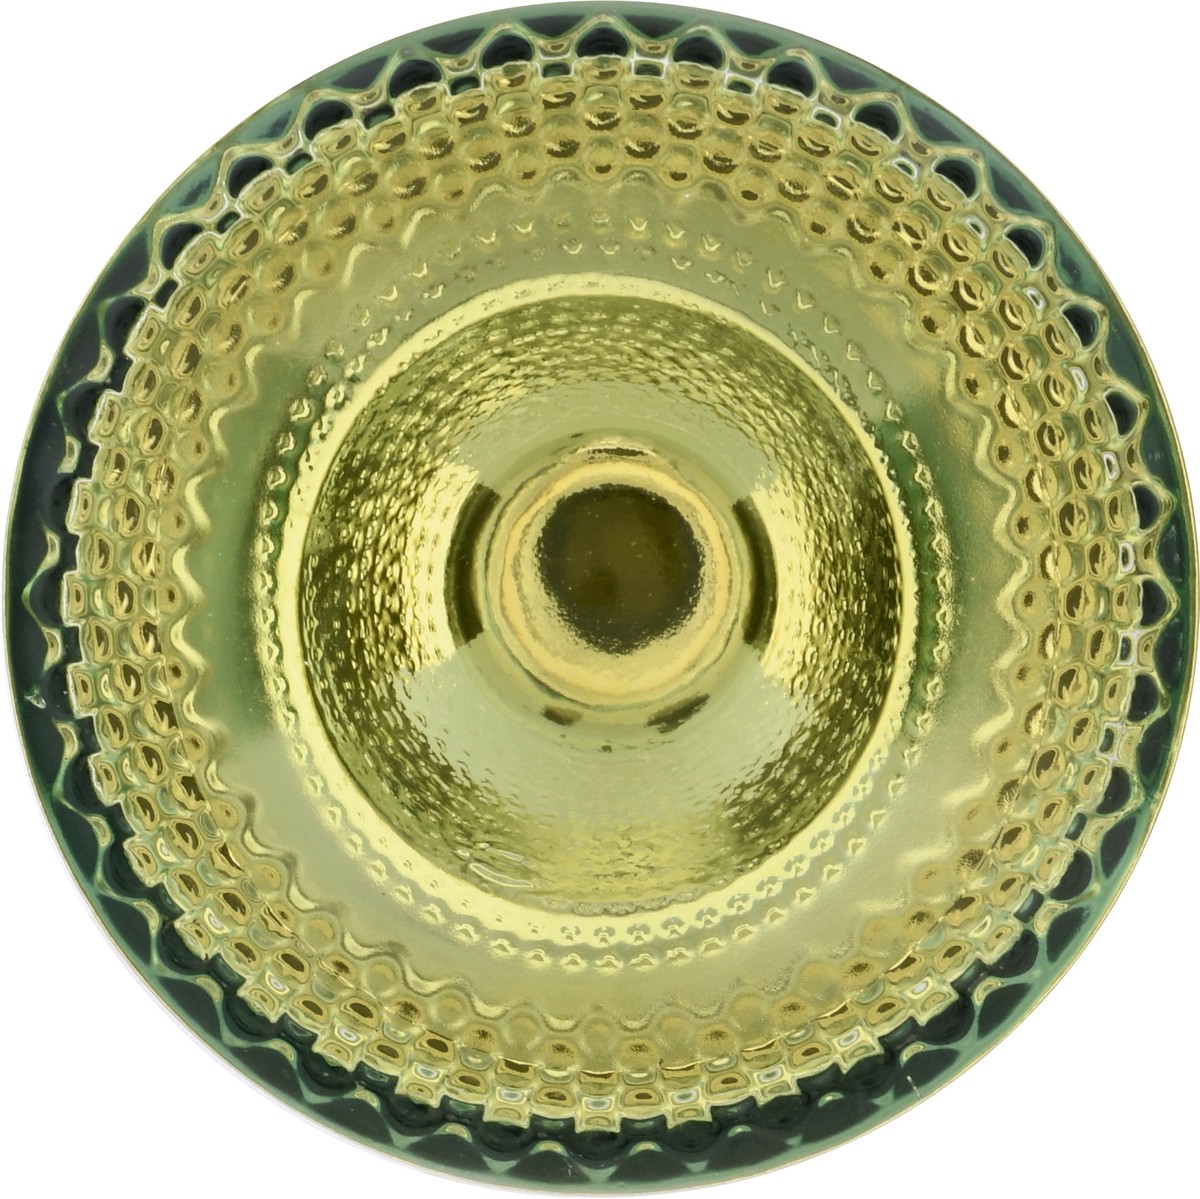 slide 6 of 11, Noble Vines Sauvignon Blanc, 750 ml